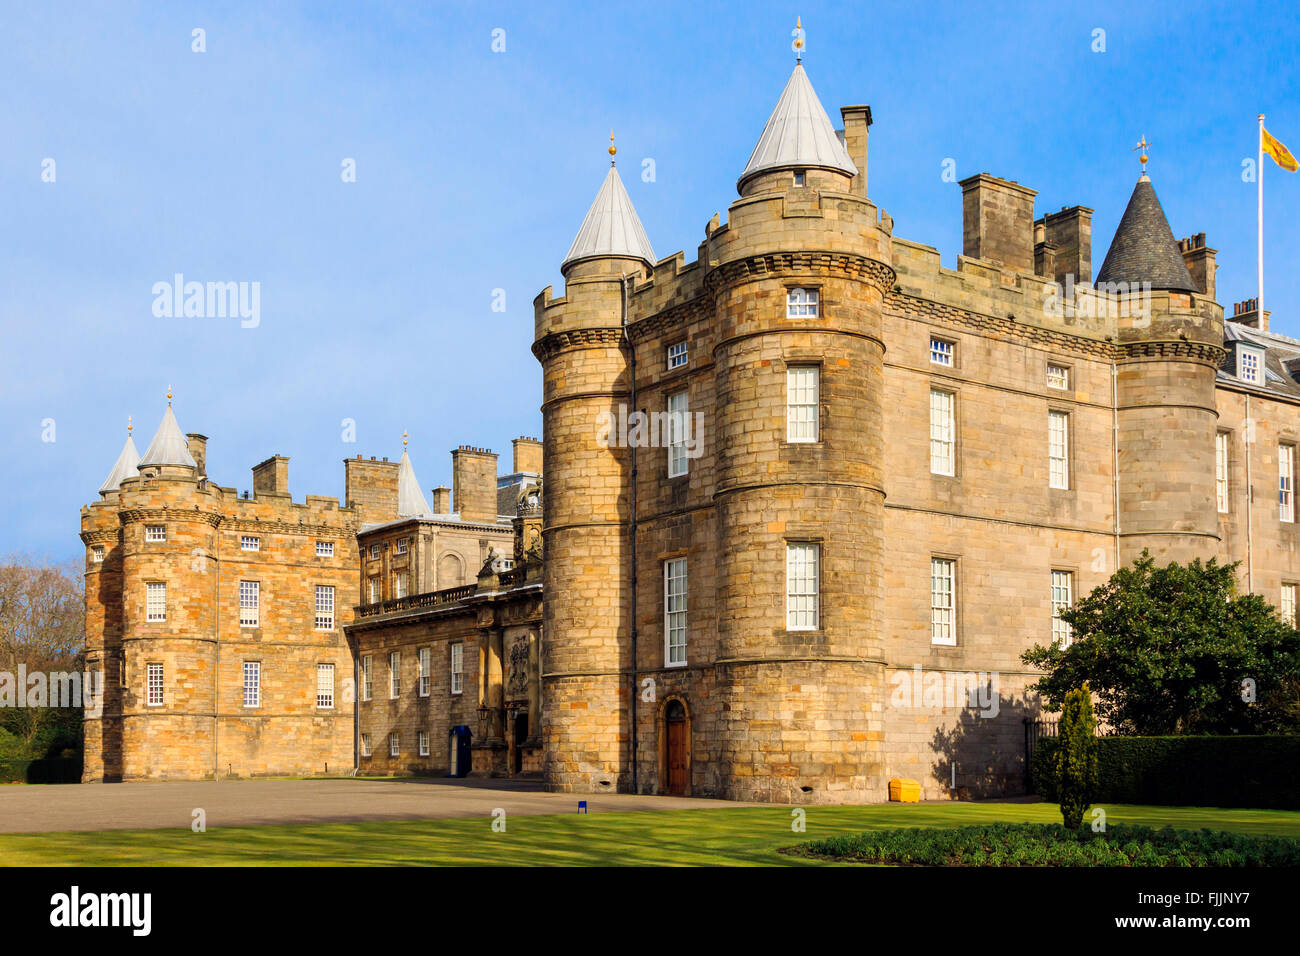 Palace of Holyrood, Edinburgh, Scotland, UK Stock Photo